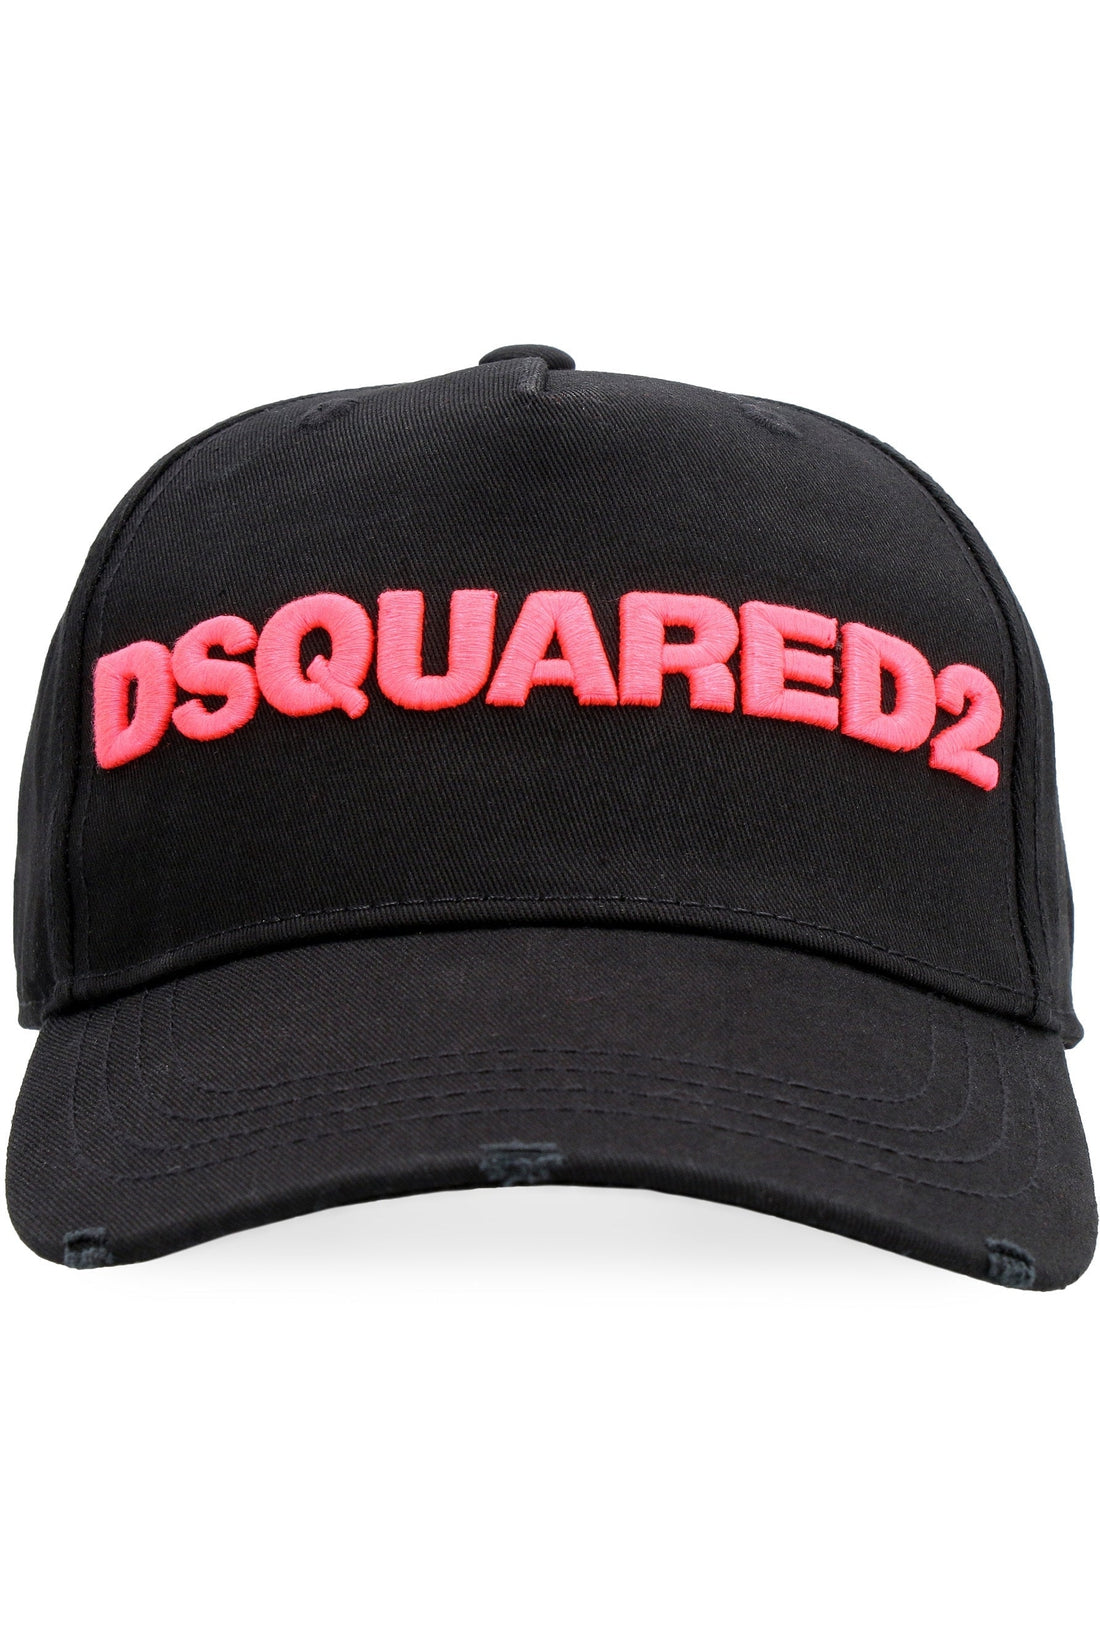 Dsquared2-OUTLET-SALE-Logo baseball cap-ARCHIVIST